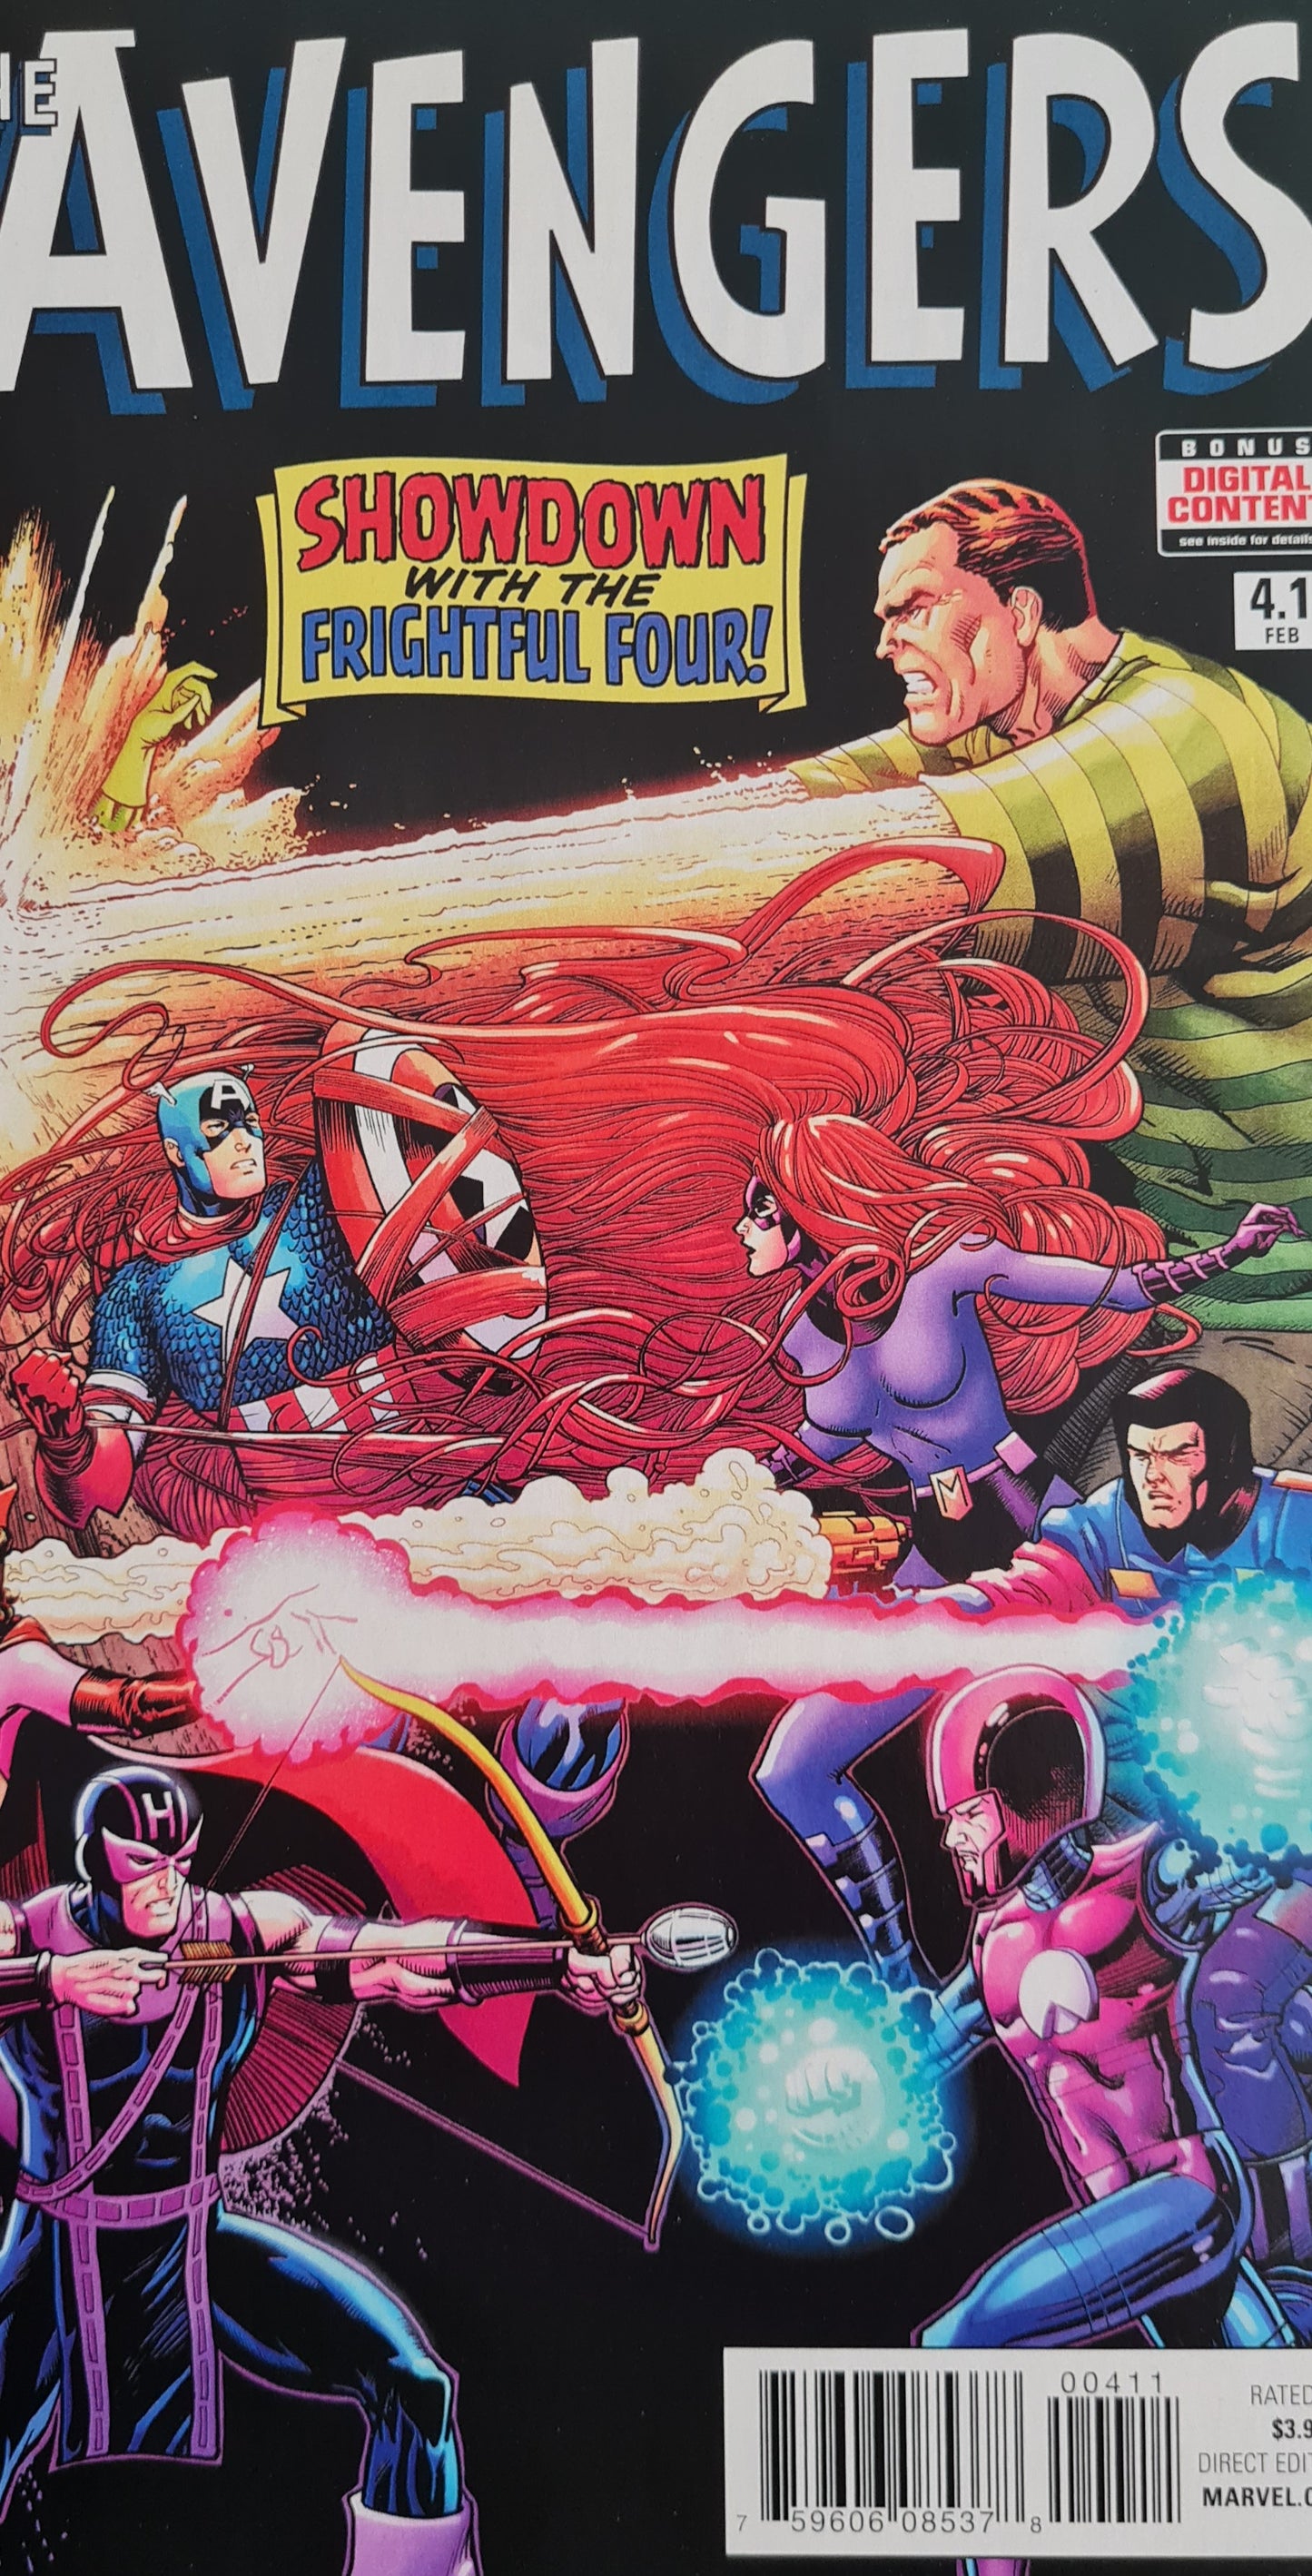 Avengers - 2016 Marvel Pop Art Production #4.1